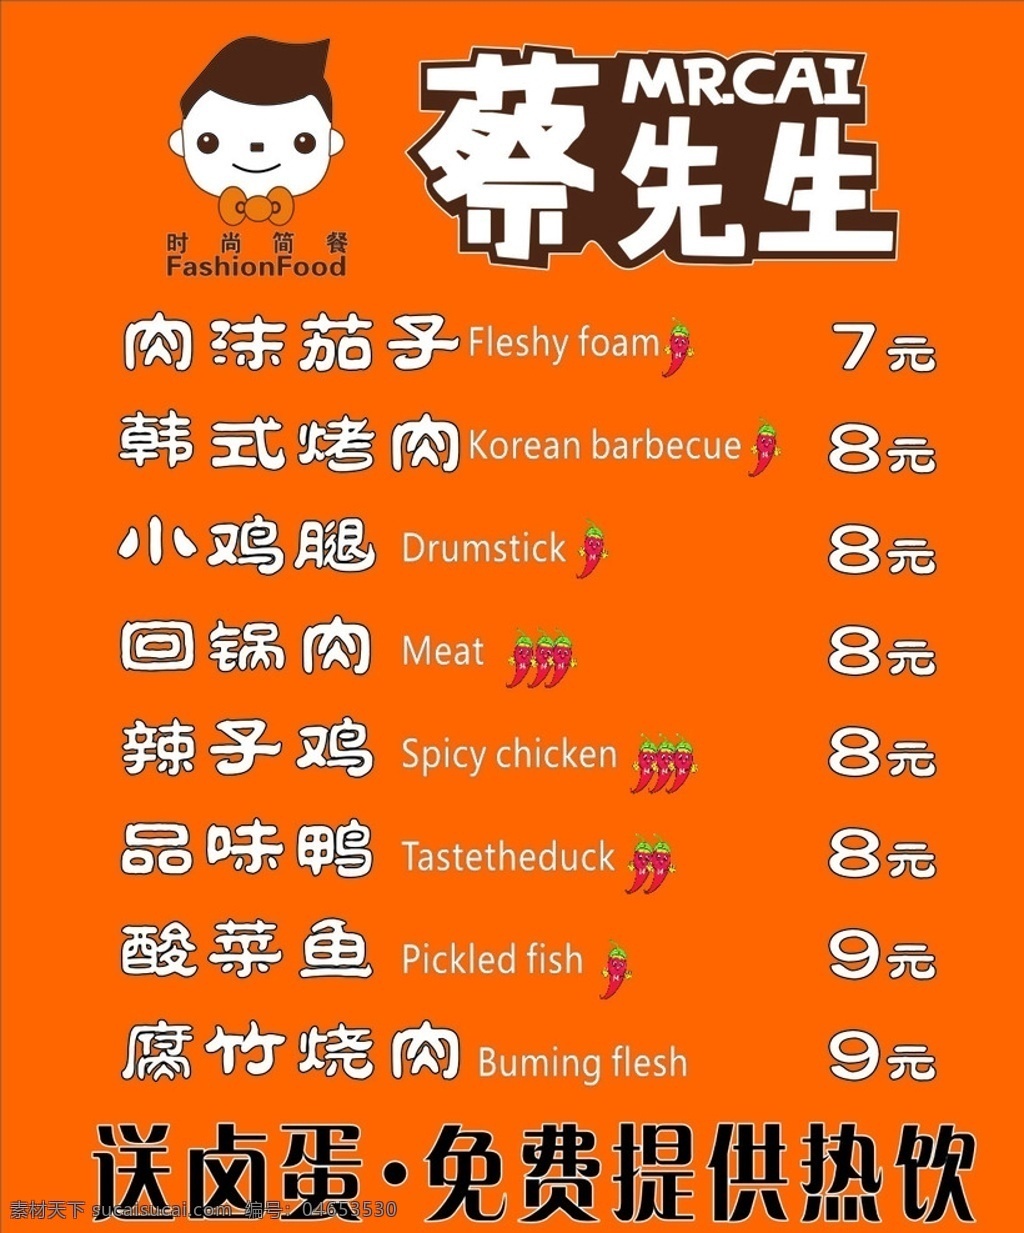 蔡先生 时尚简餐 标志 价格表 辣椒 logo logo设计